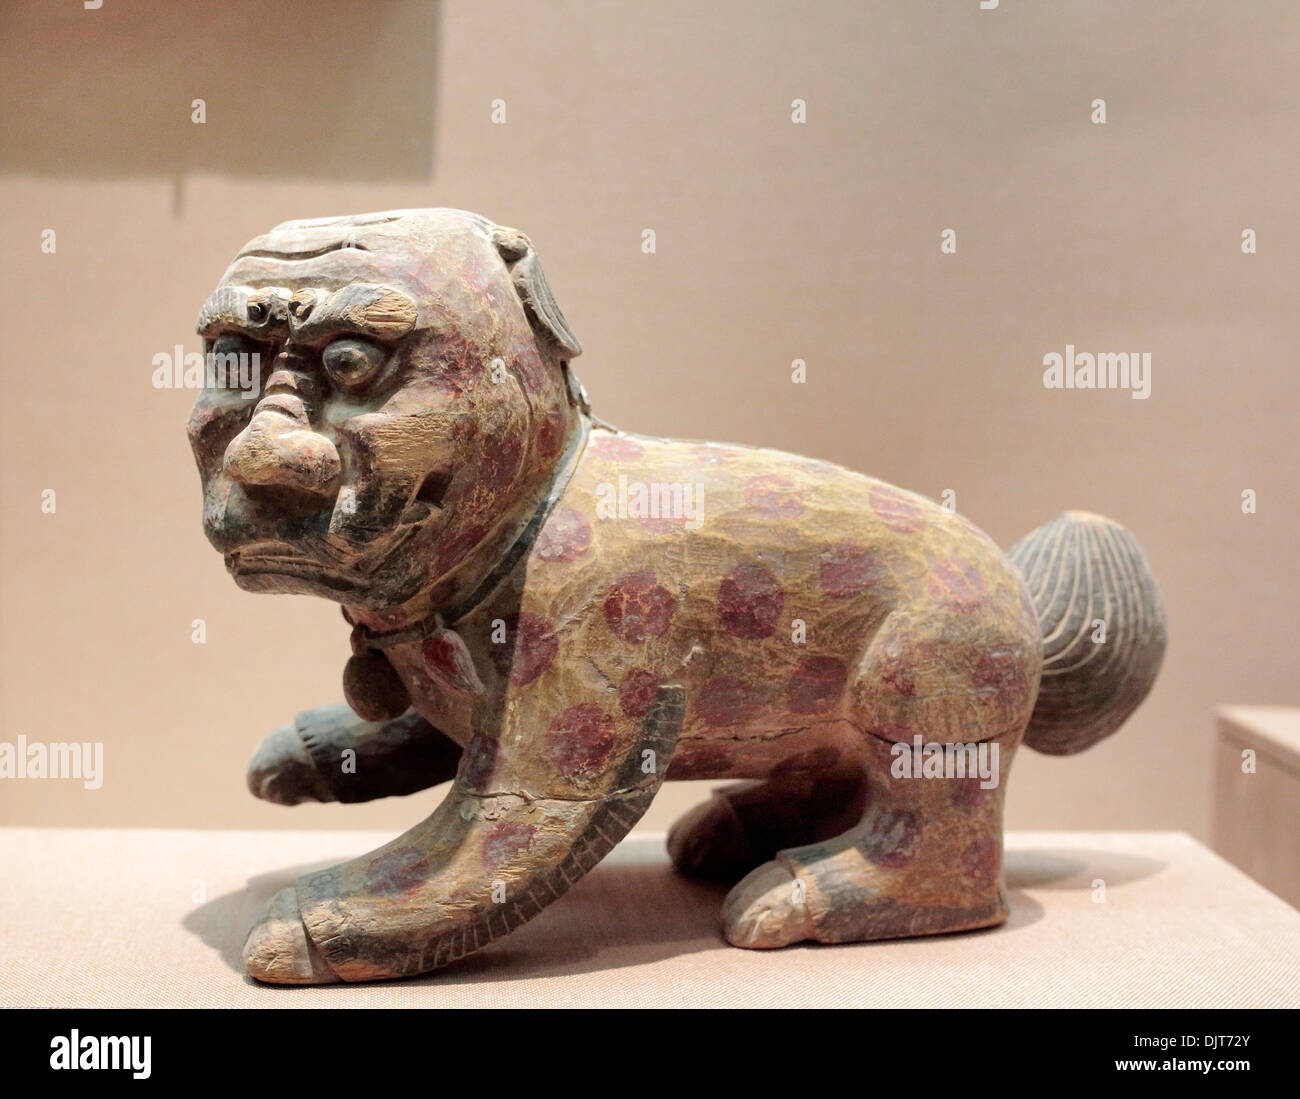 Sculpture en bois de lion, musée de la ville de Dunhuang, Nanjing, province de Gansu, Chine Banque D'Images